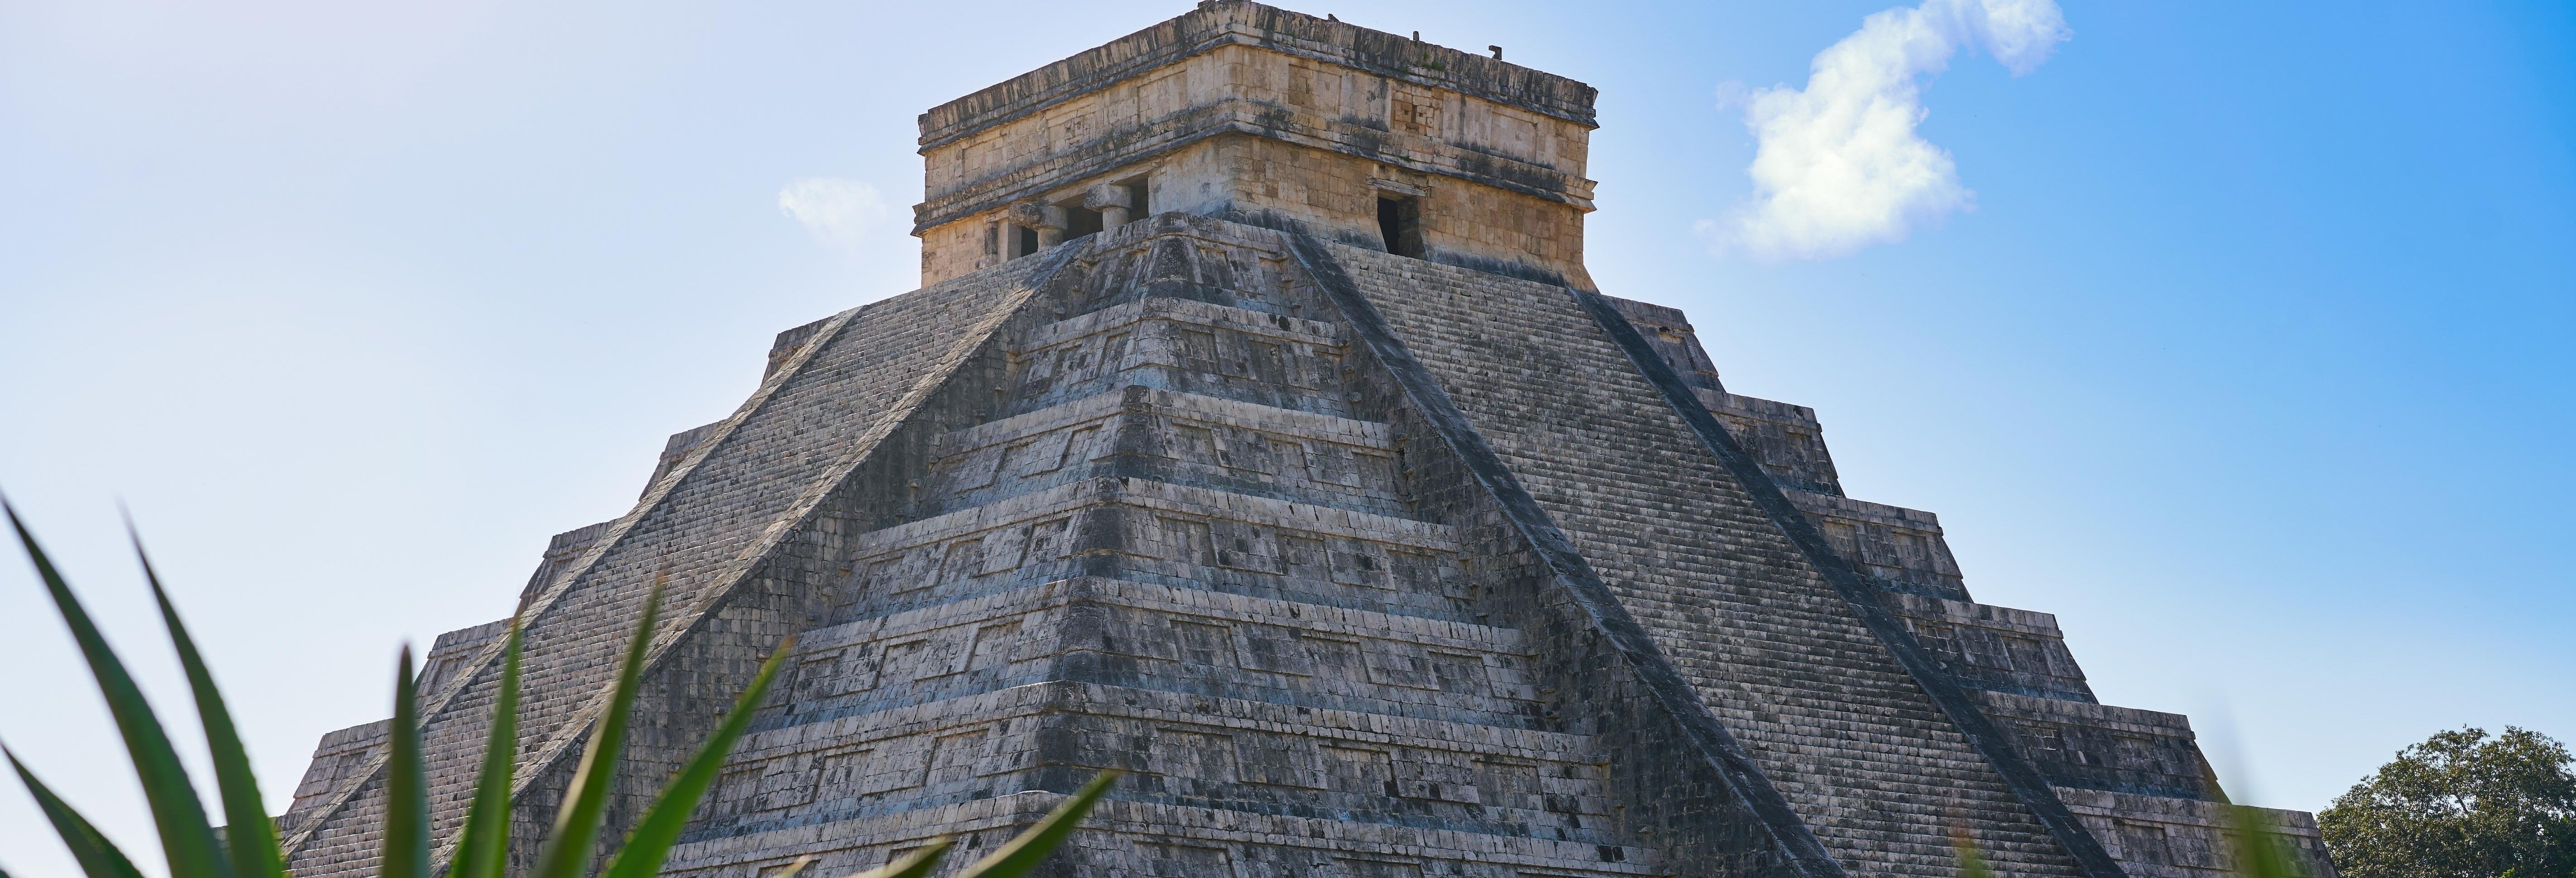 Excursión a Chichén Itzá + Tulum en 2 días desde Cancún